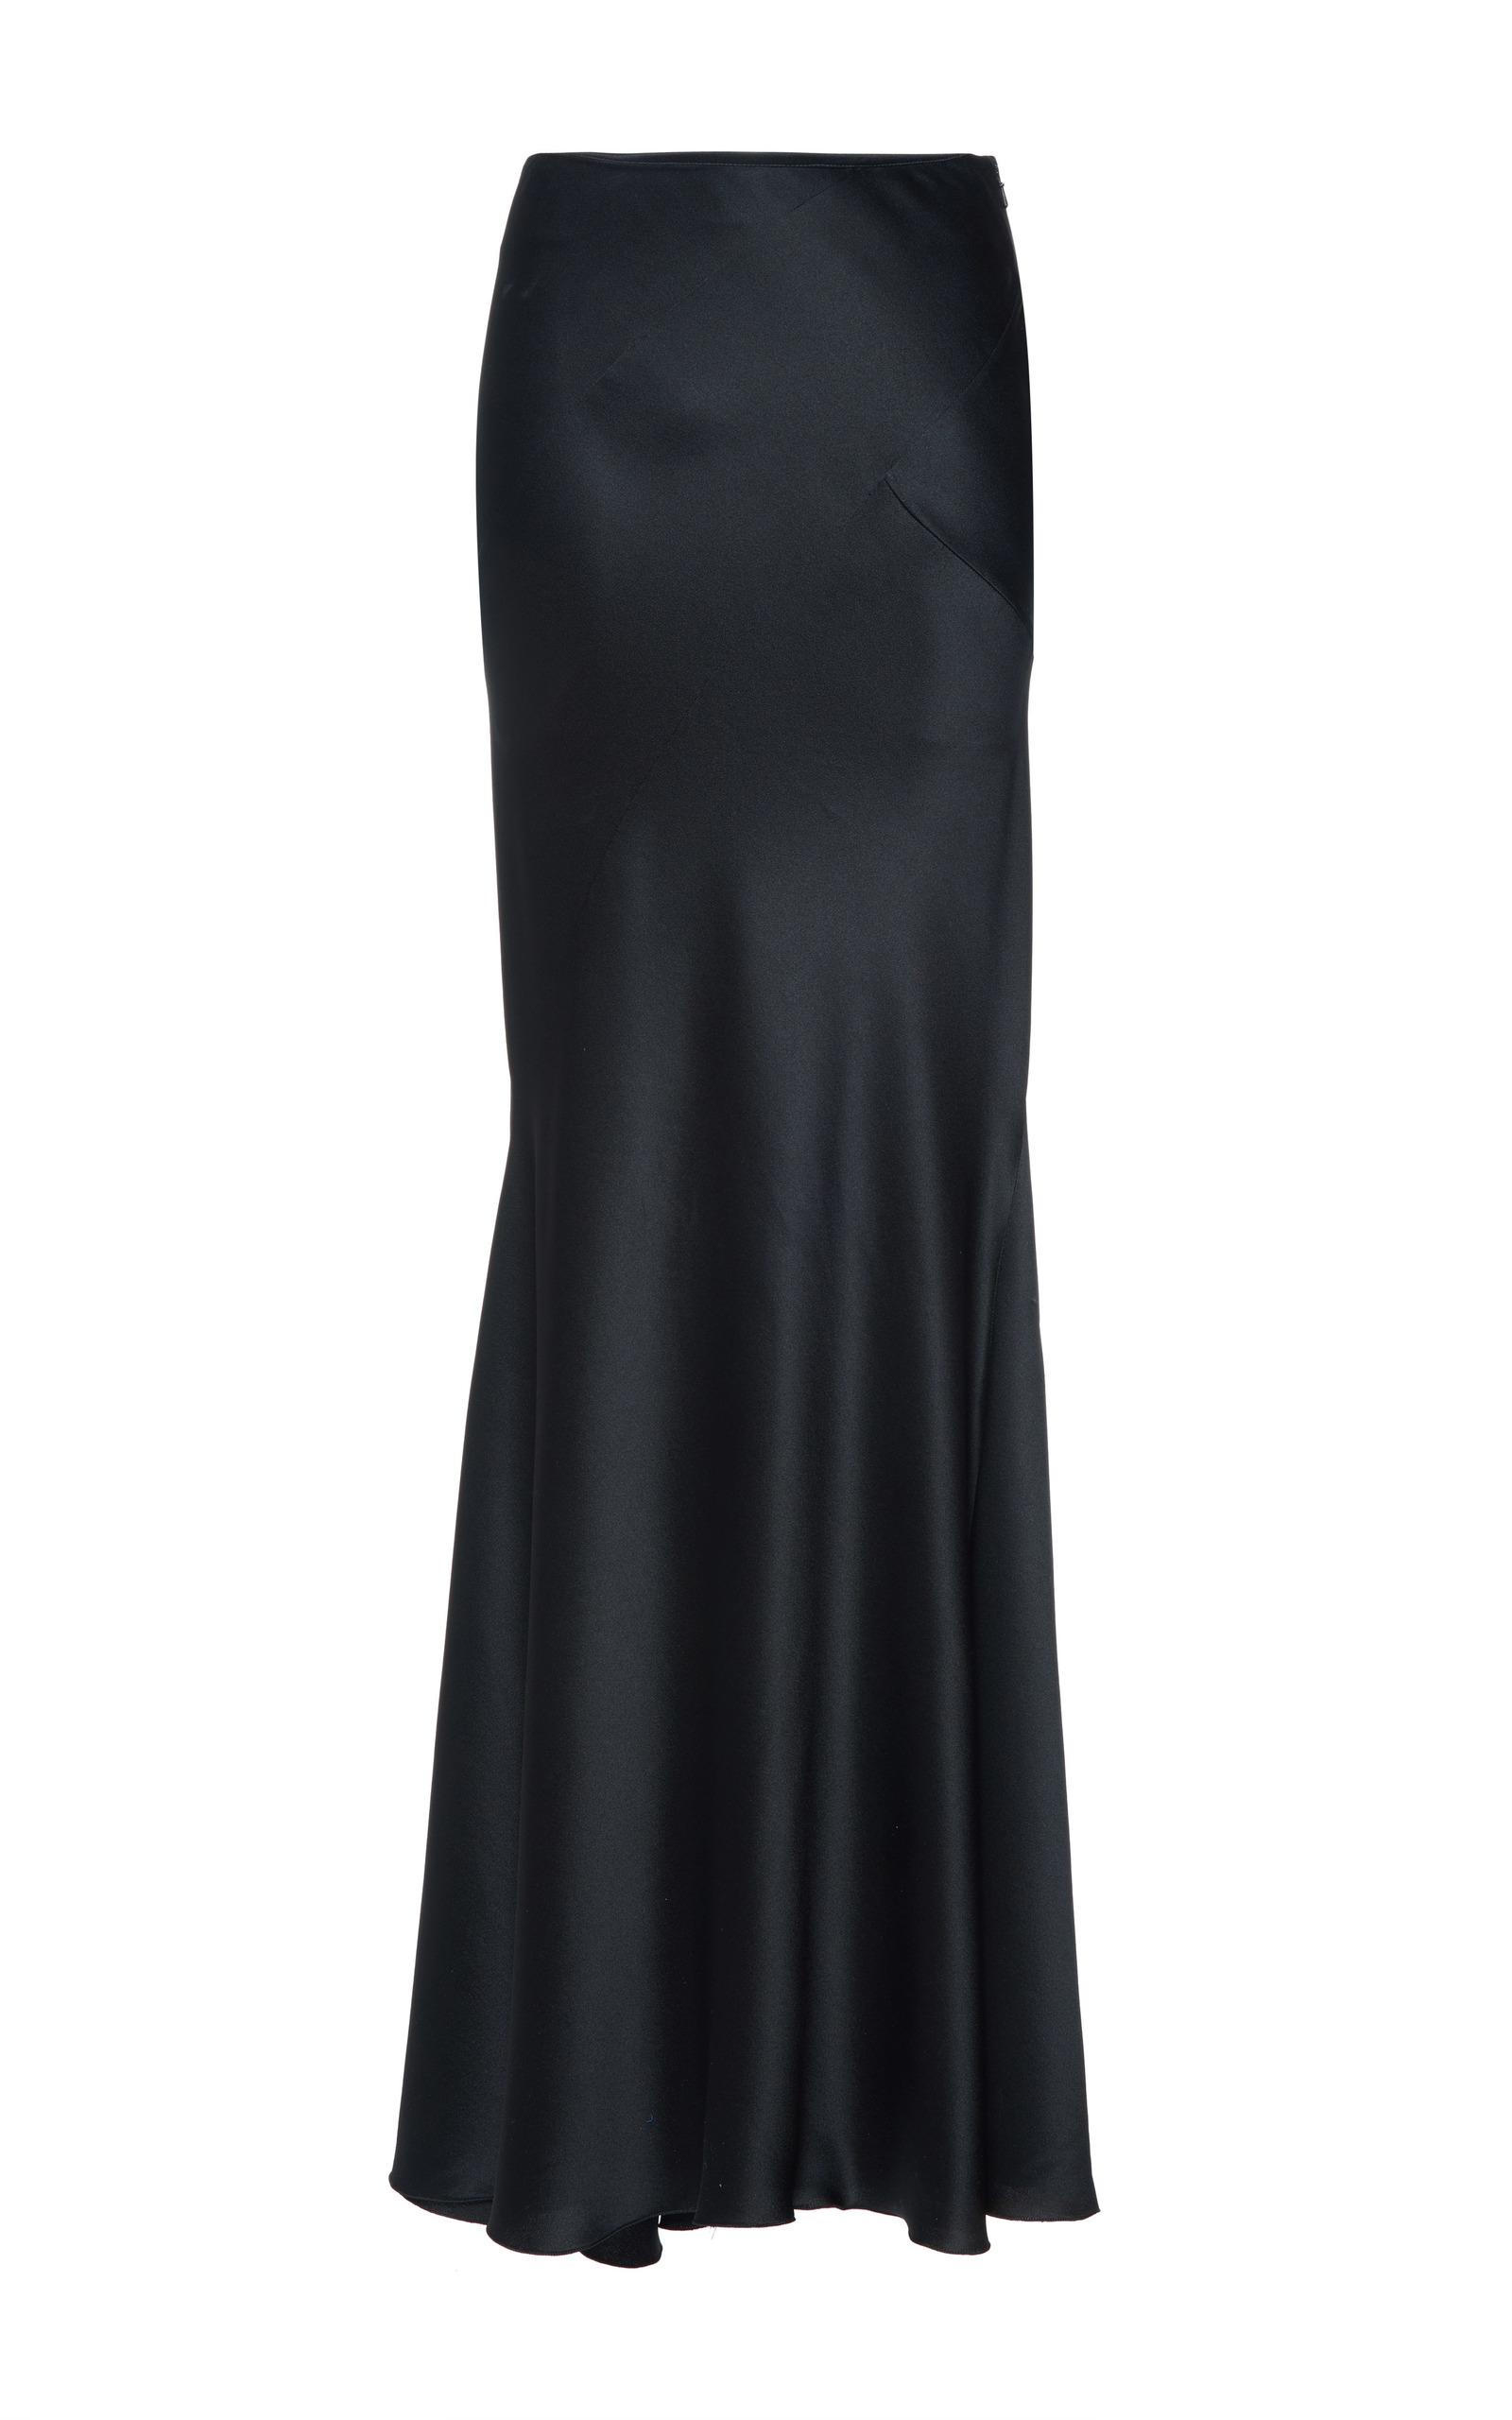 Alberta Ferretti Silk Satin Long Skirt in Black - Lyst